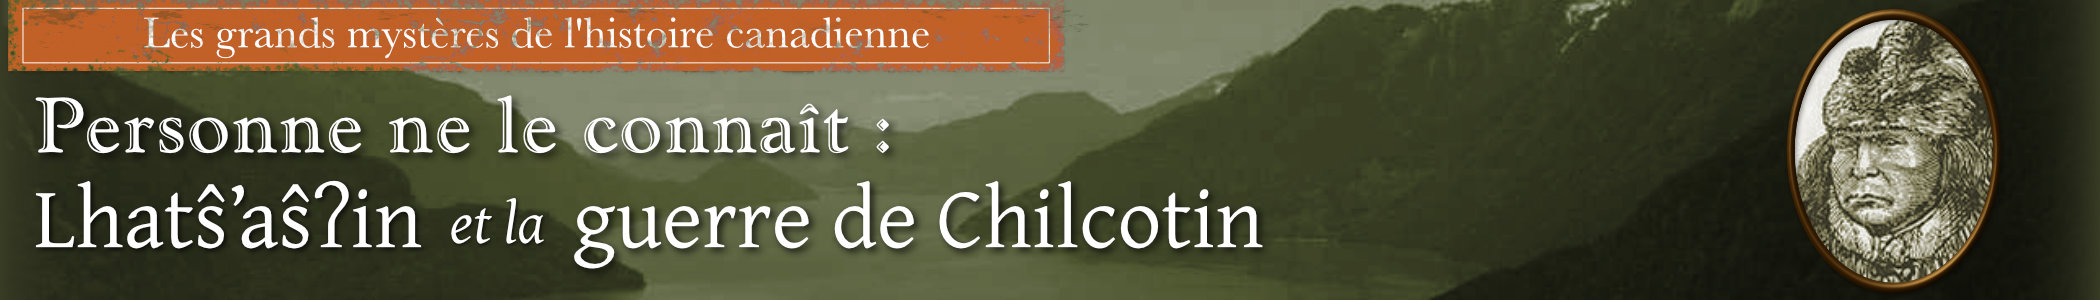 Personne ne connat son nom: Klatsassin et la guerre de Chilcotin